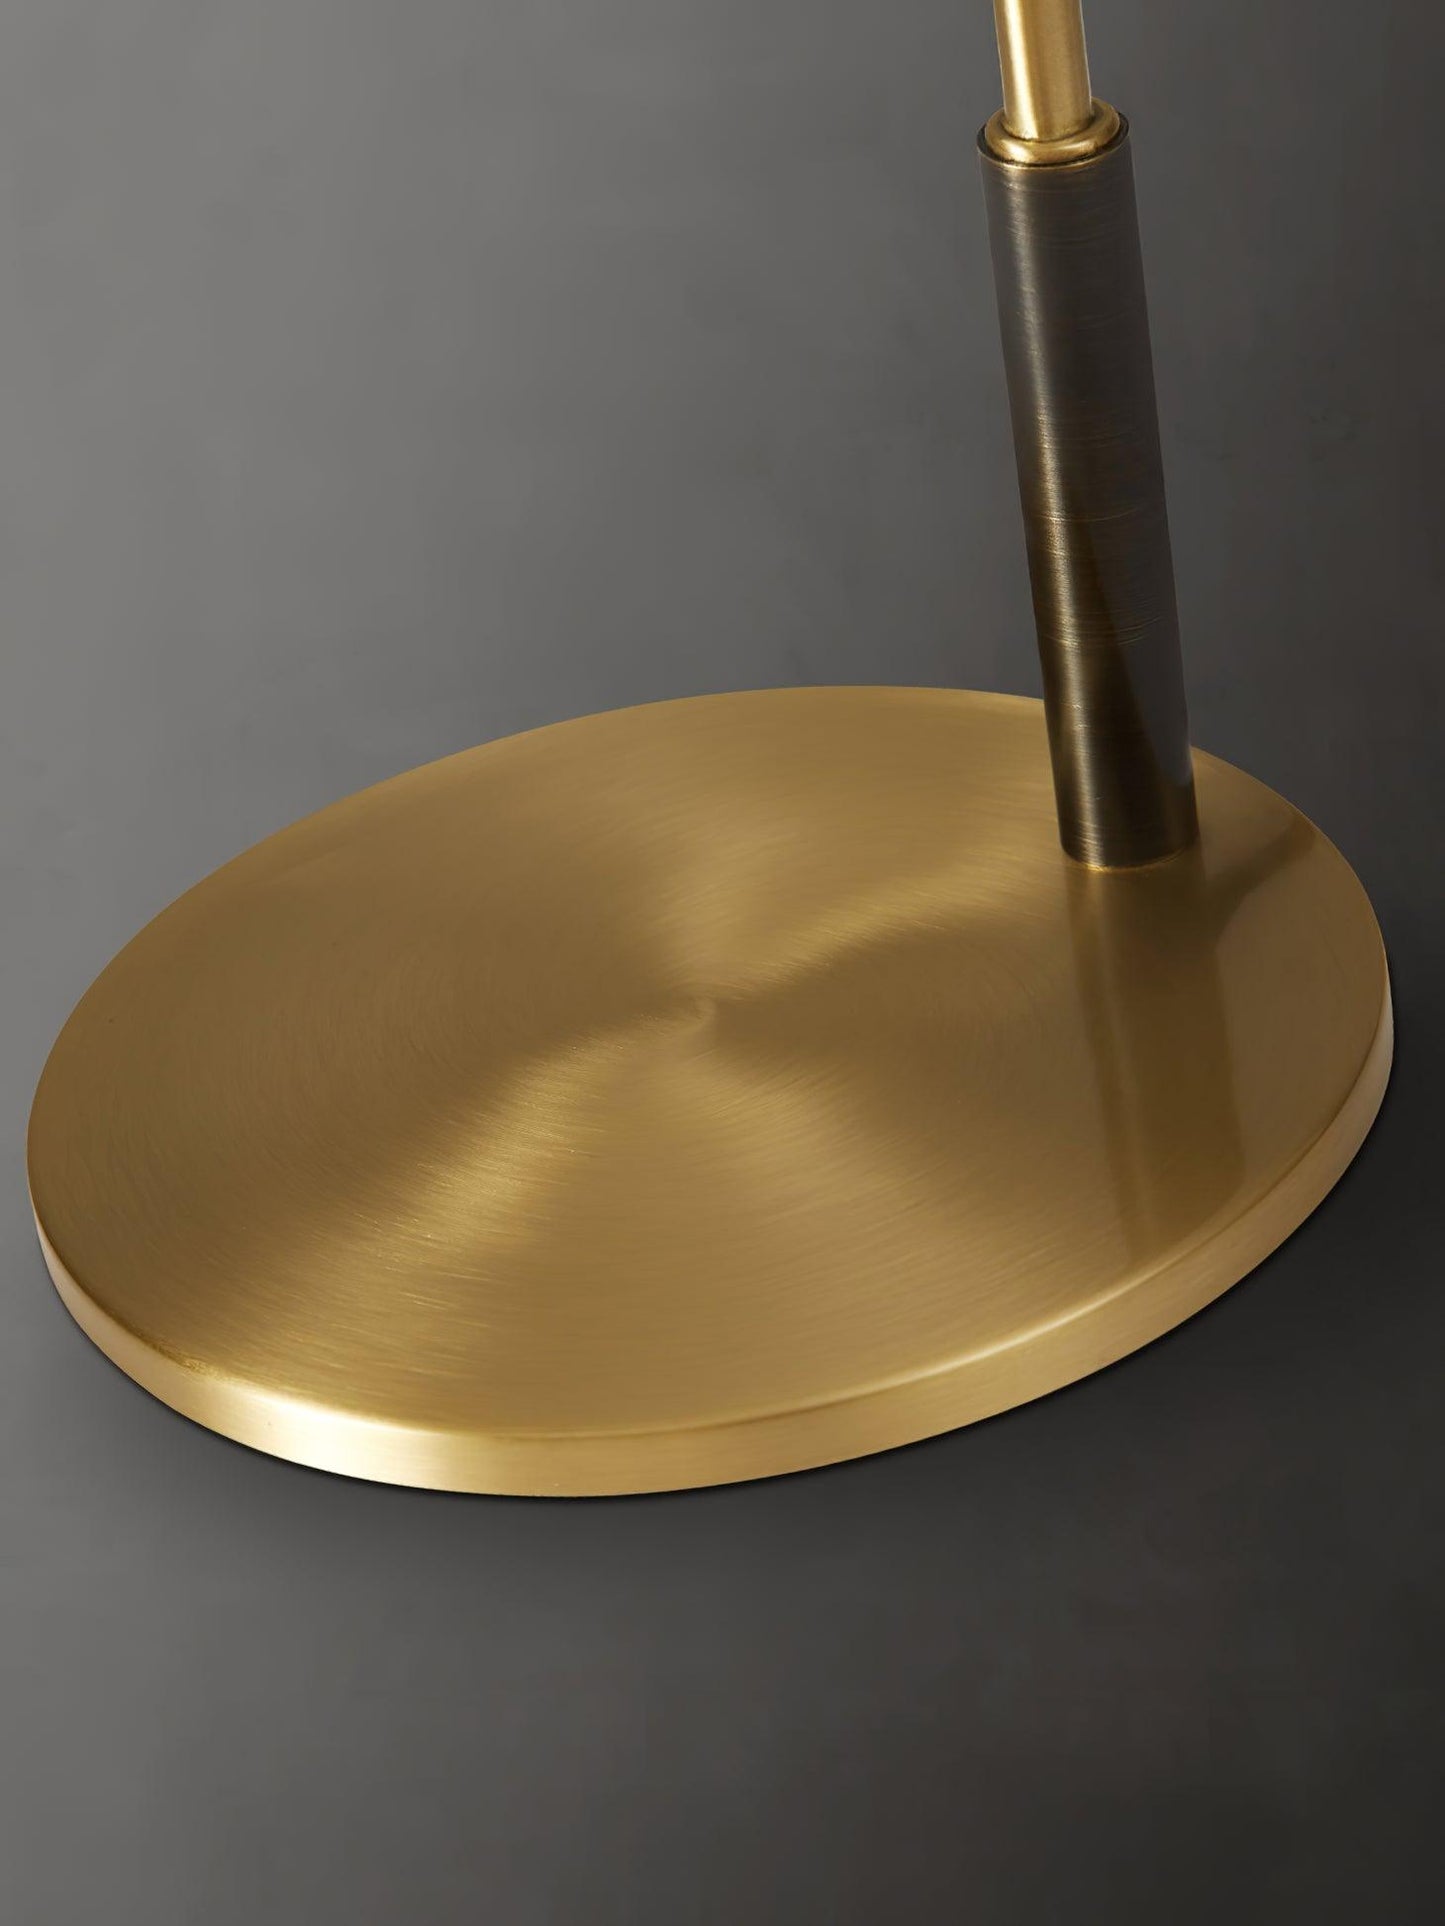 Ari Scandustrial Table Lamp